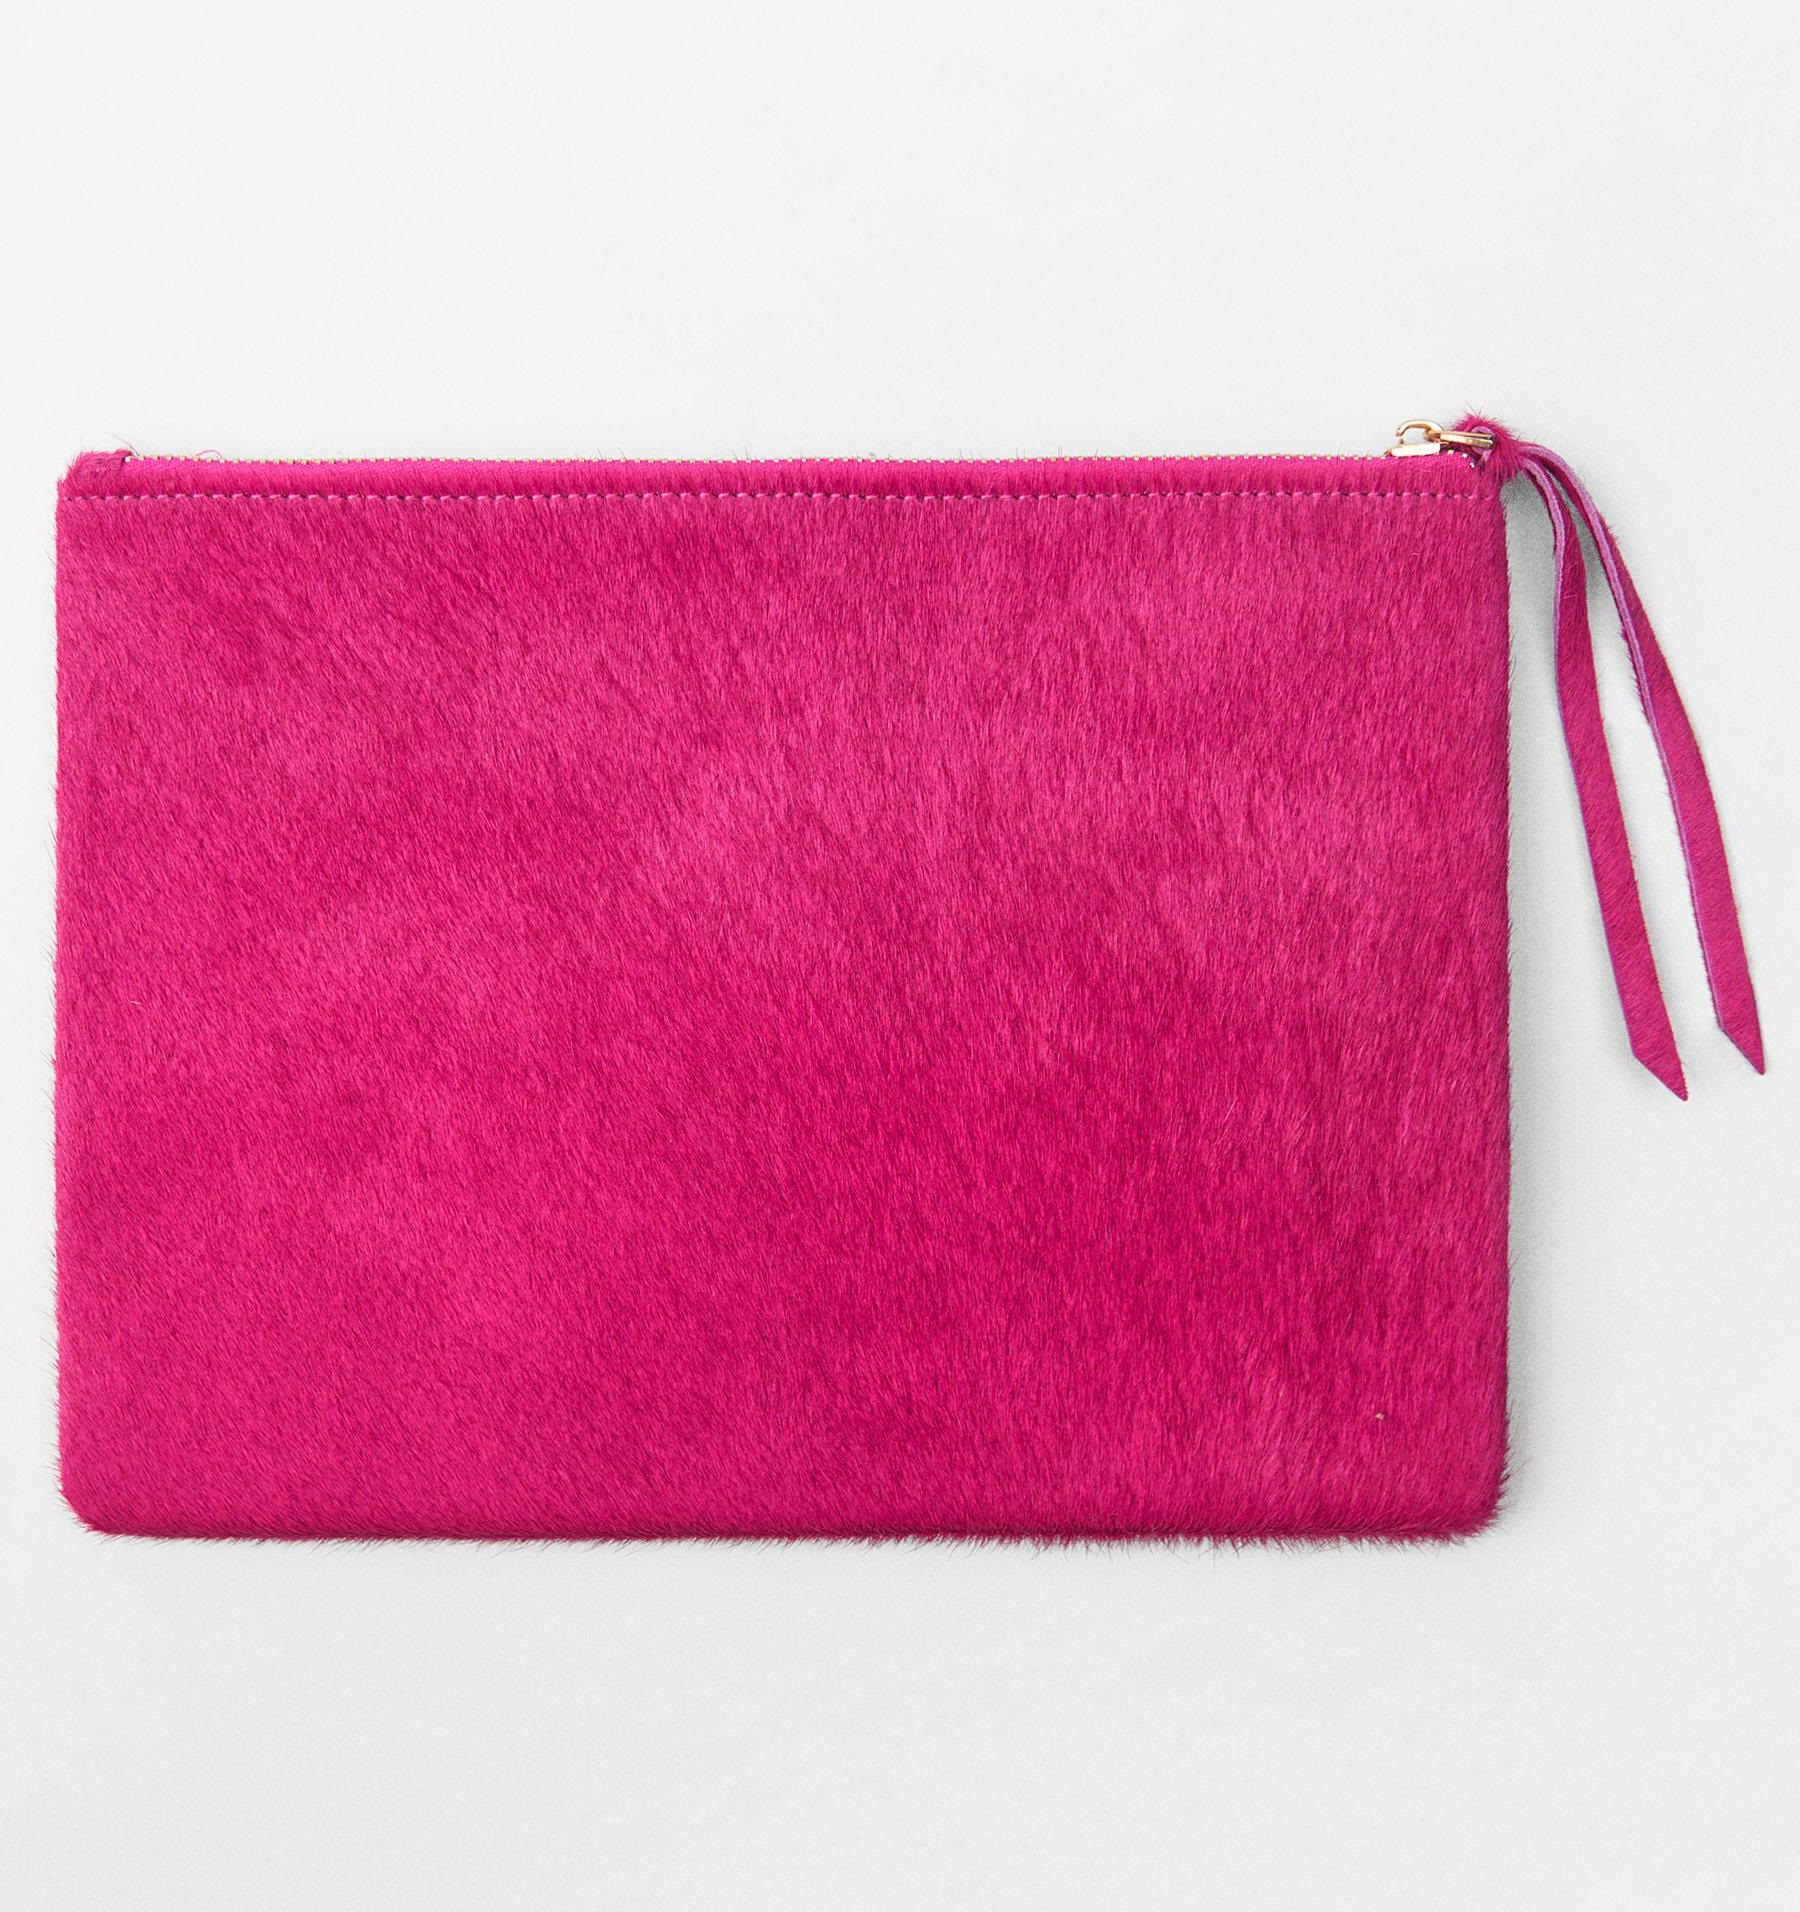 Клатч Zara Small Hair On Leather, темно-розовый сумка пельмень кожаная золотой клатч lmr 9919 8j